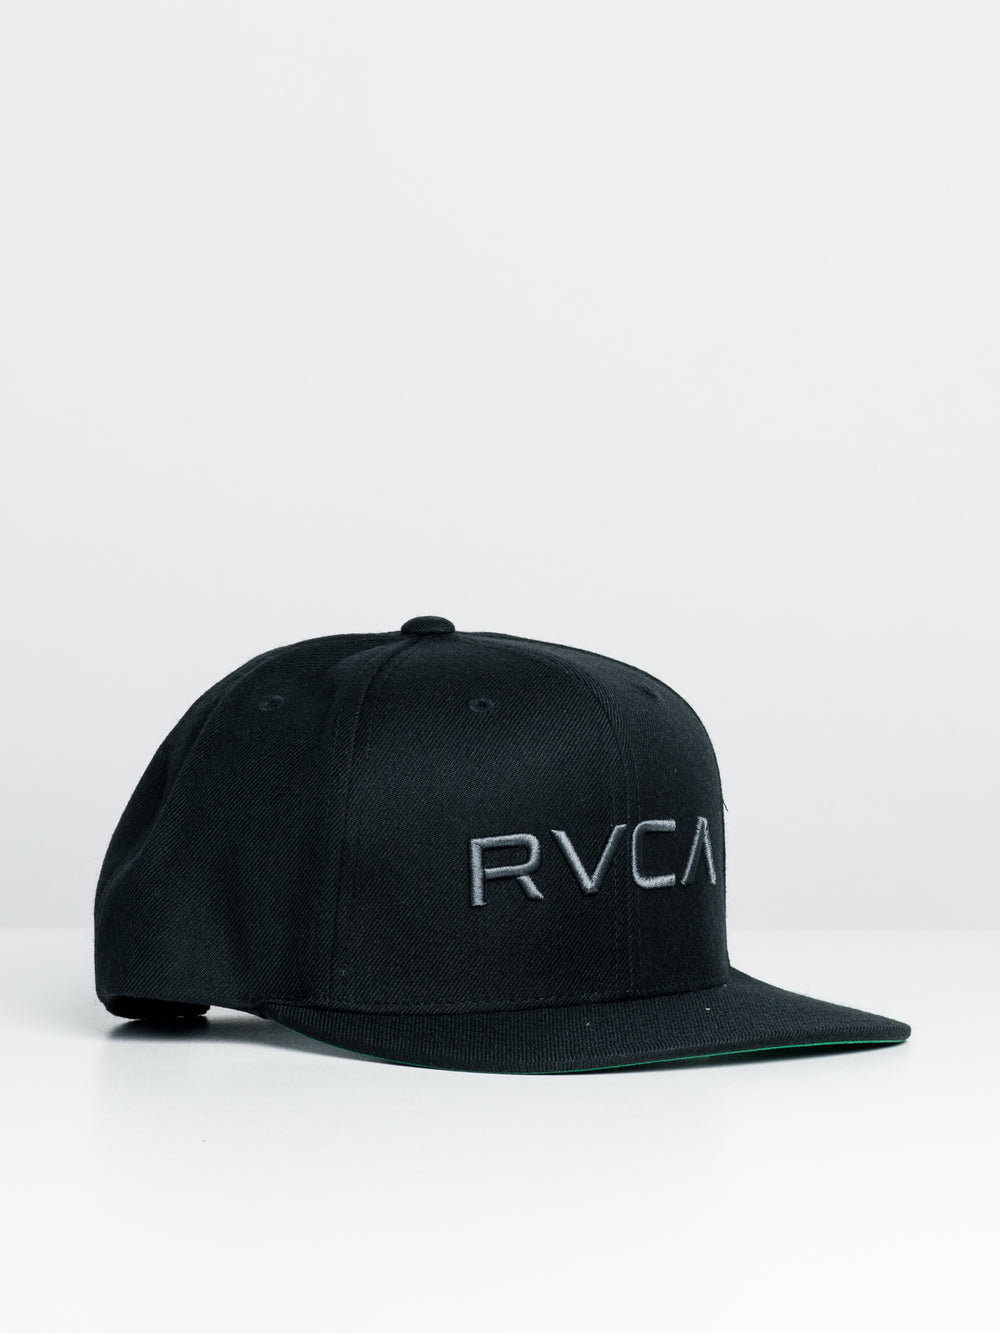 RVCA TWILL SNAPBACK HAT II - CLEARANCE